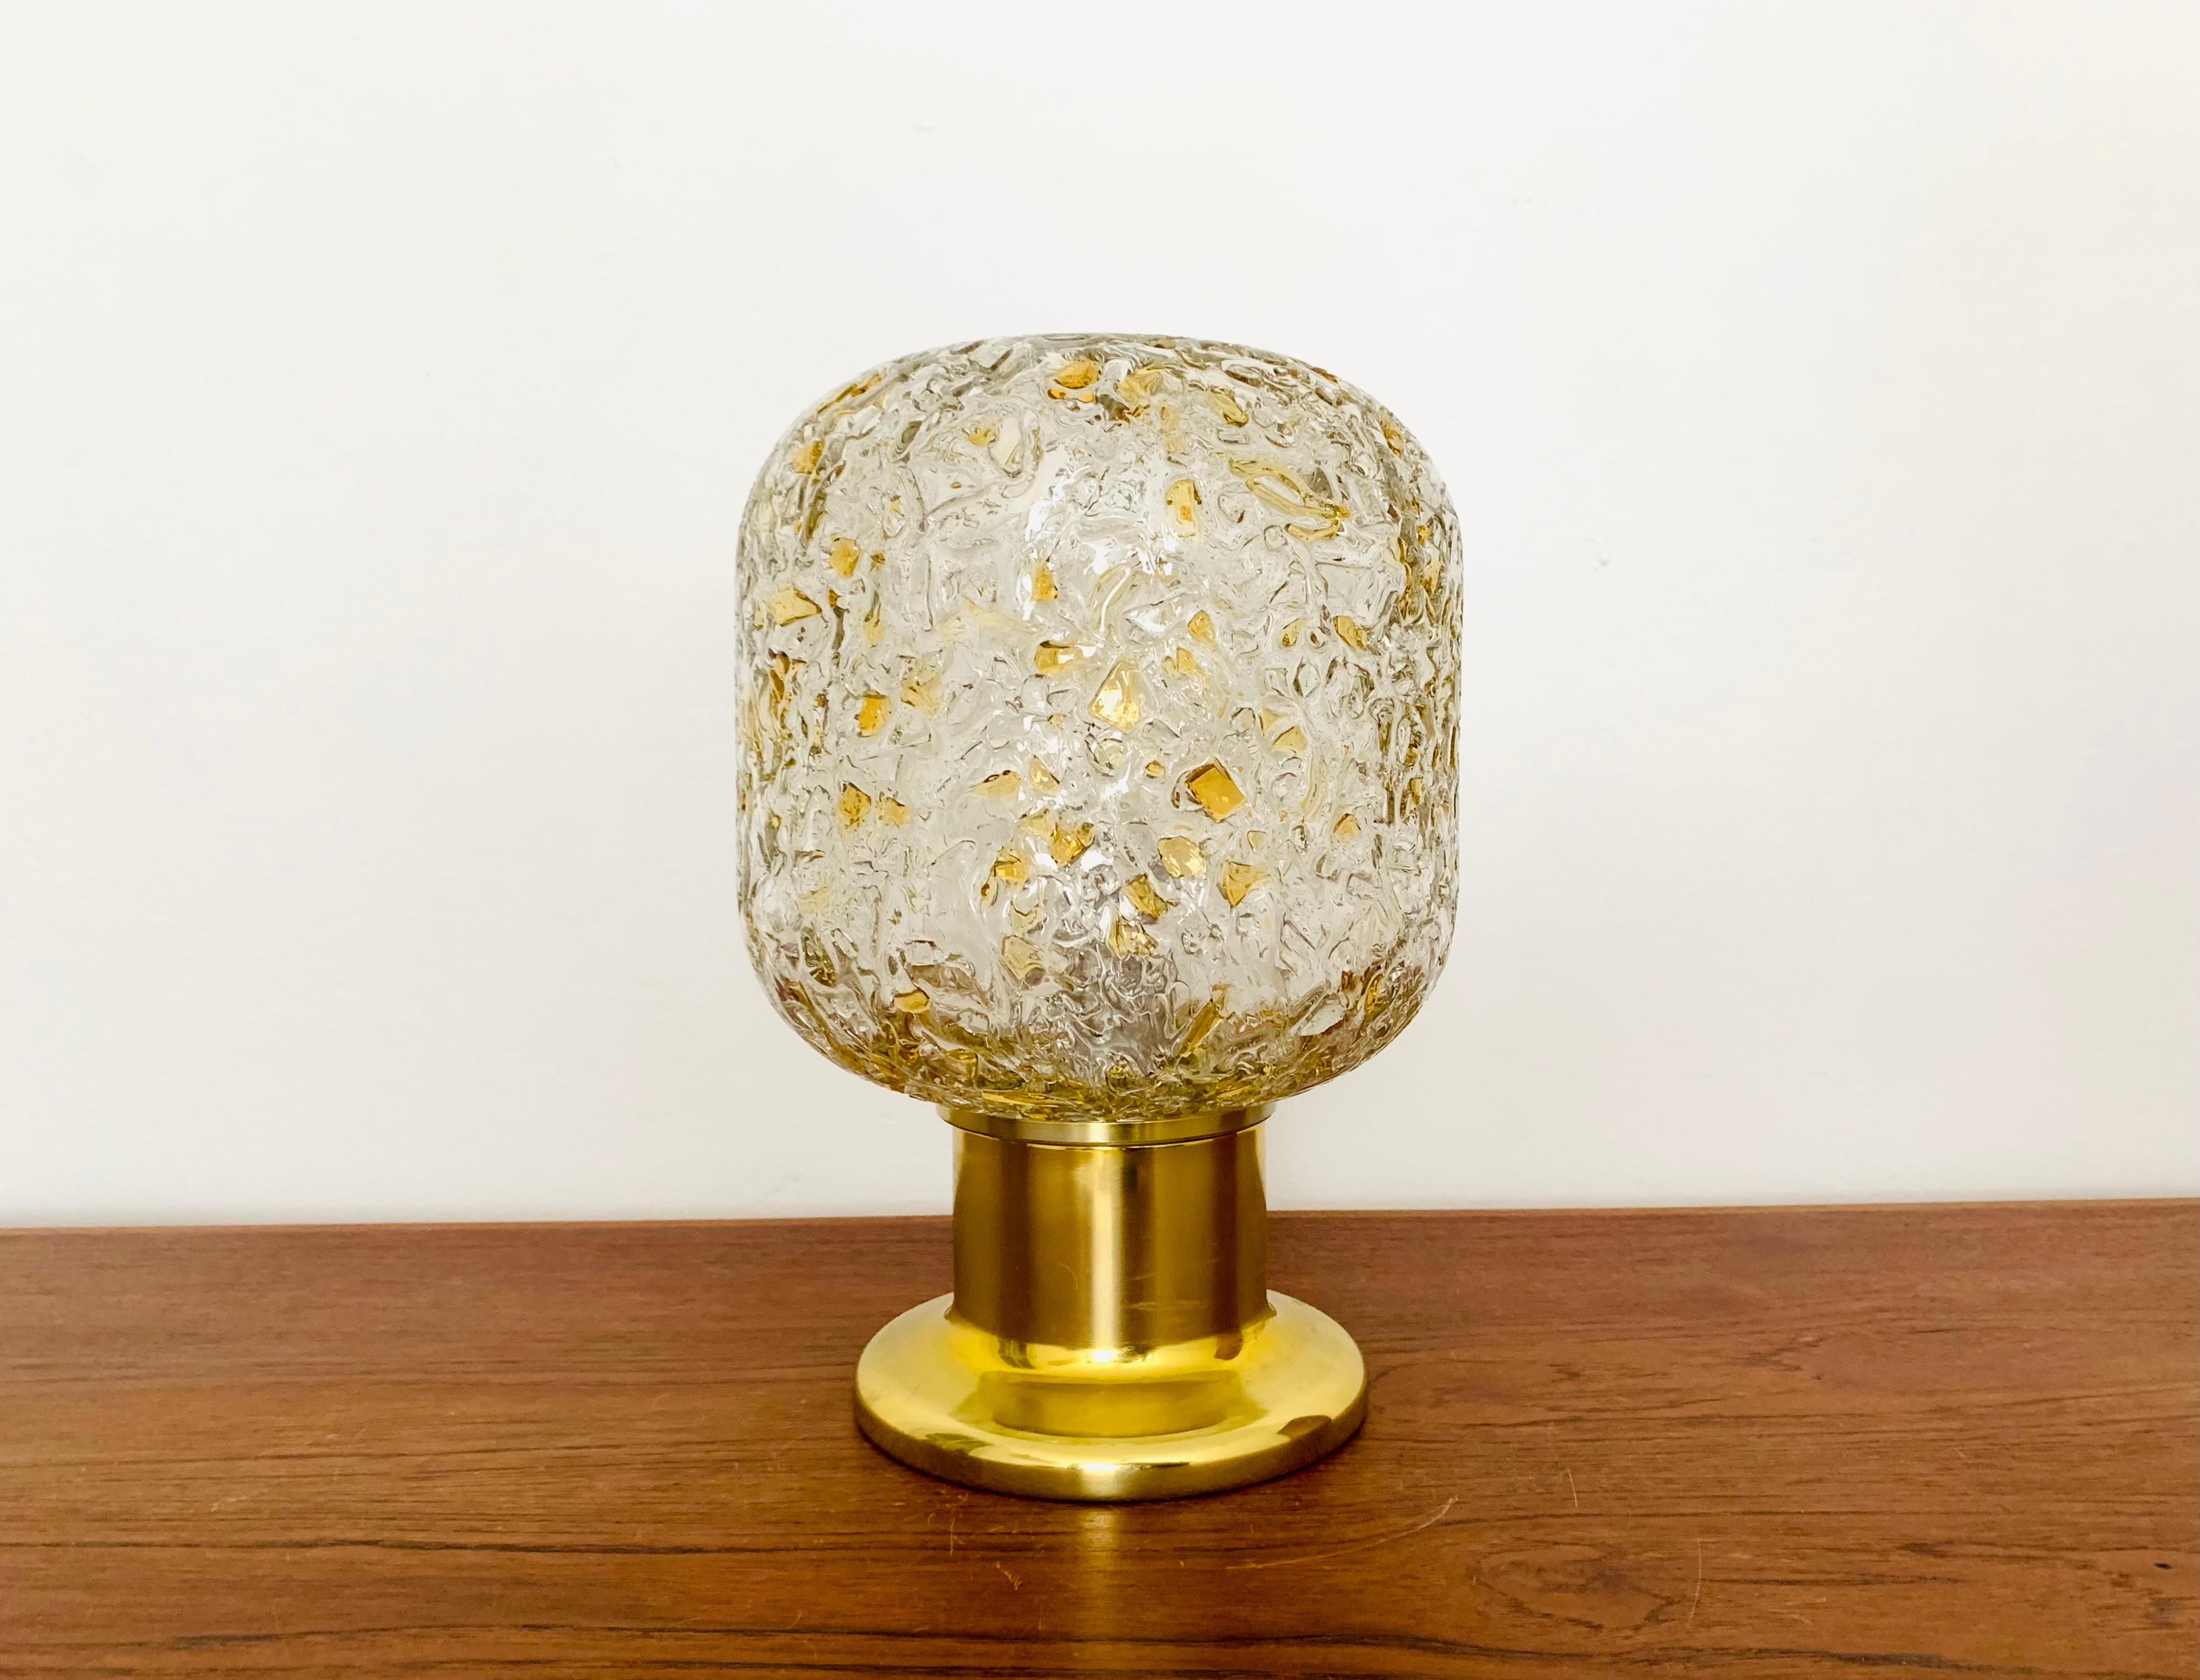 Sehr schöne goldene Tischlampe von Doria aus den 1960er Jahren.
Sehr elegantes Hollywood Regency Design mit einem fantastisch glamourösen Look.
Die Struktur im Glas erzeugt ein spektakuläres, funkelndes Licht.

Bedingung:

Sehr guter